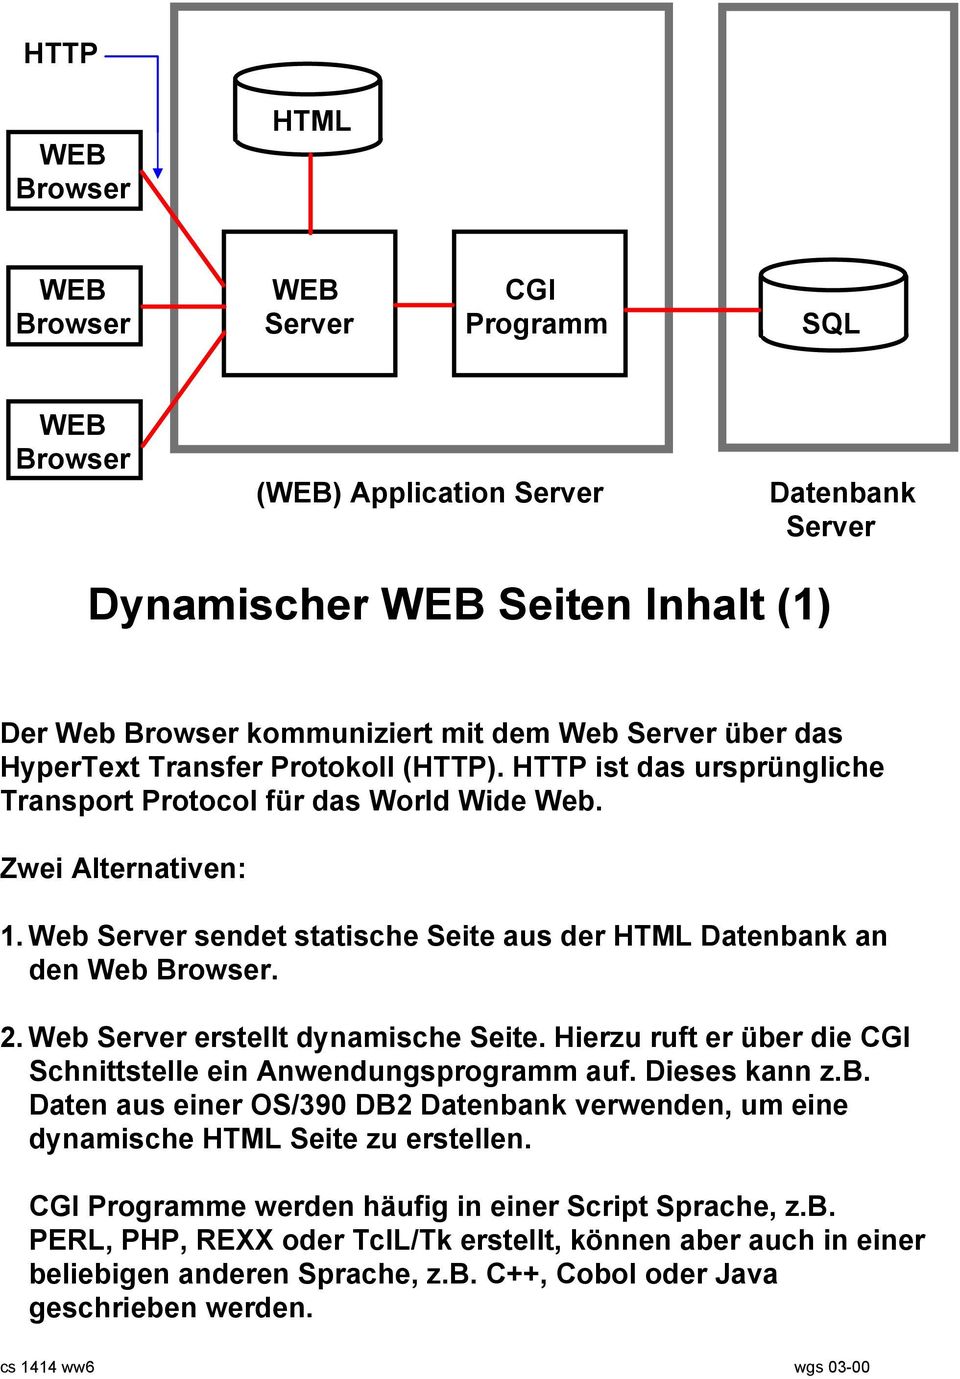 Web Server sendet statische Seite aus der HTML Datenbank an den Web Browser. 2. Web Server erstellt dynamische Seite. Hierzu ruft er über die CGI Schnittstelle ein Anwendungsprogramm auf.